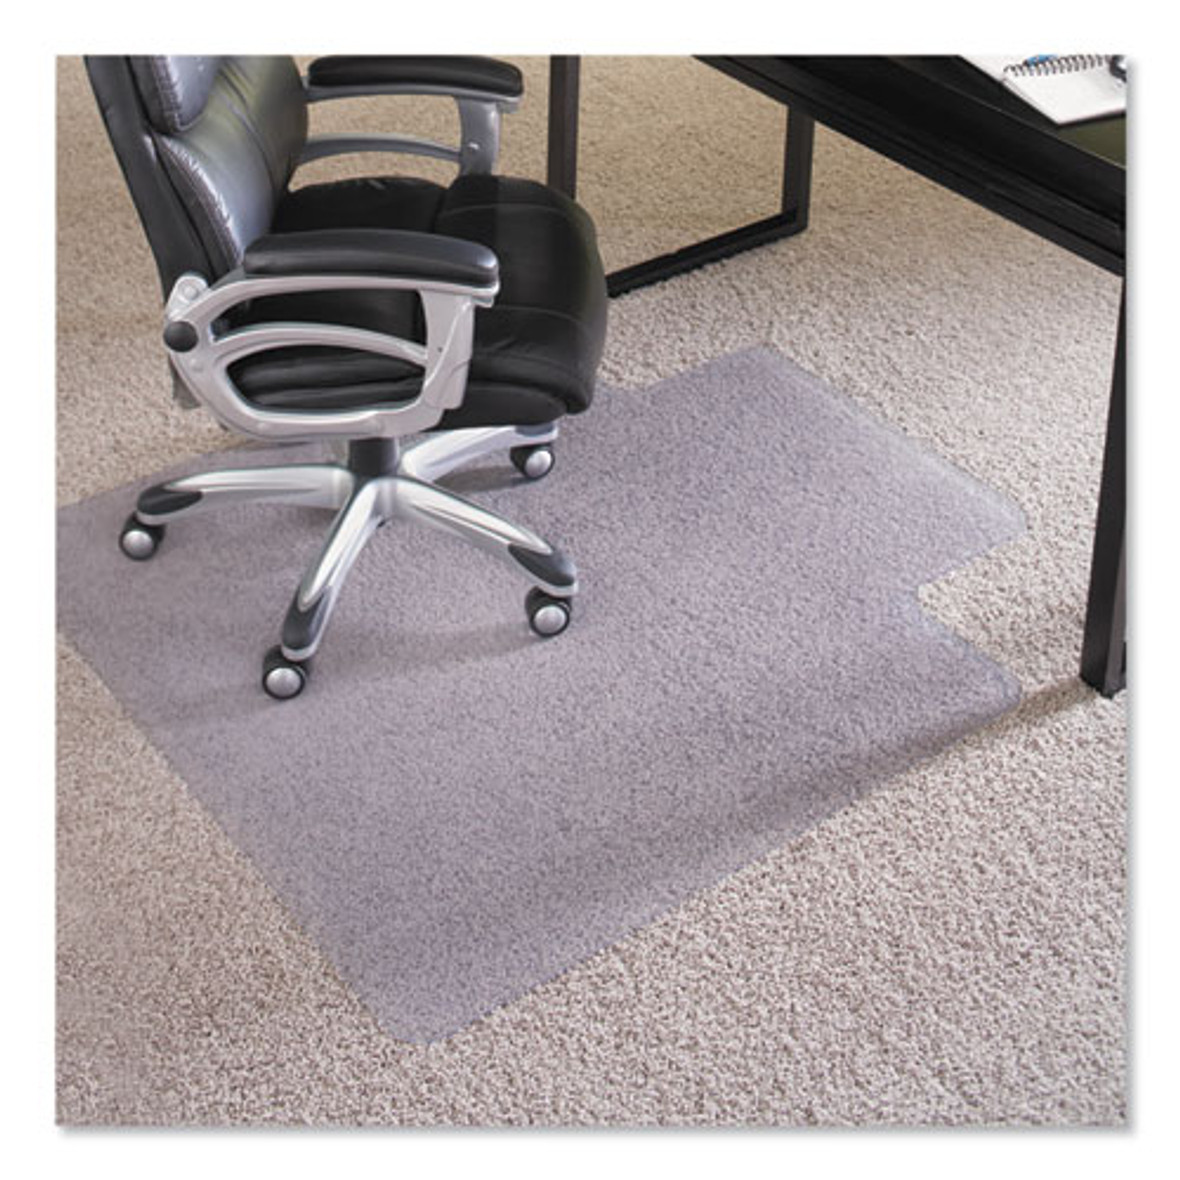 ES Robbins® Performance Series Anchorbar Chair Mat For Carpet Up to 1", 45 x 53, Clear, 1 Each/Carton